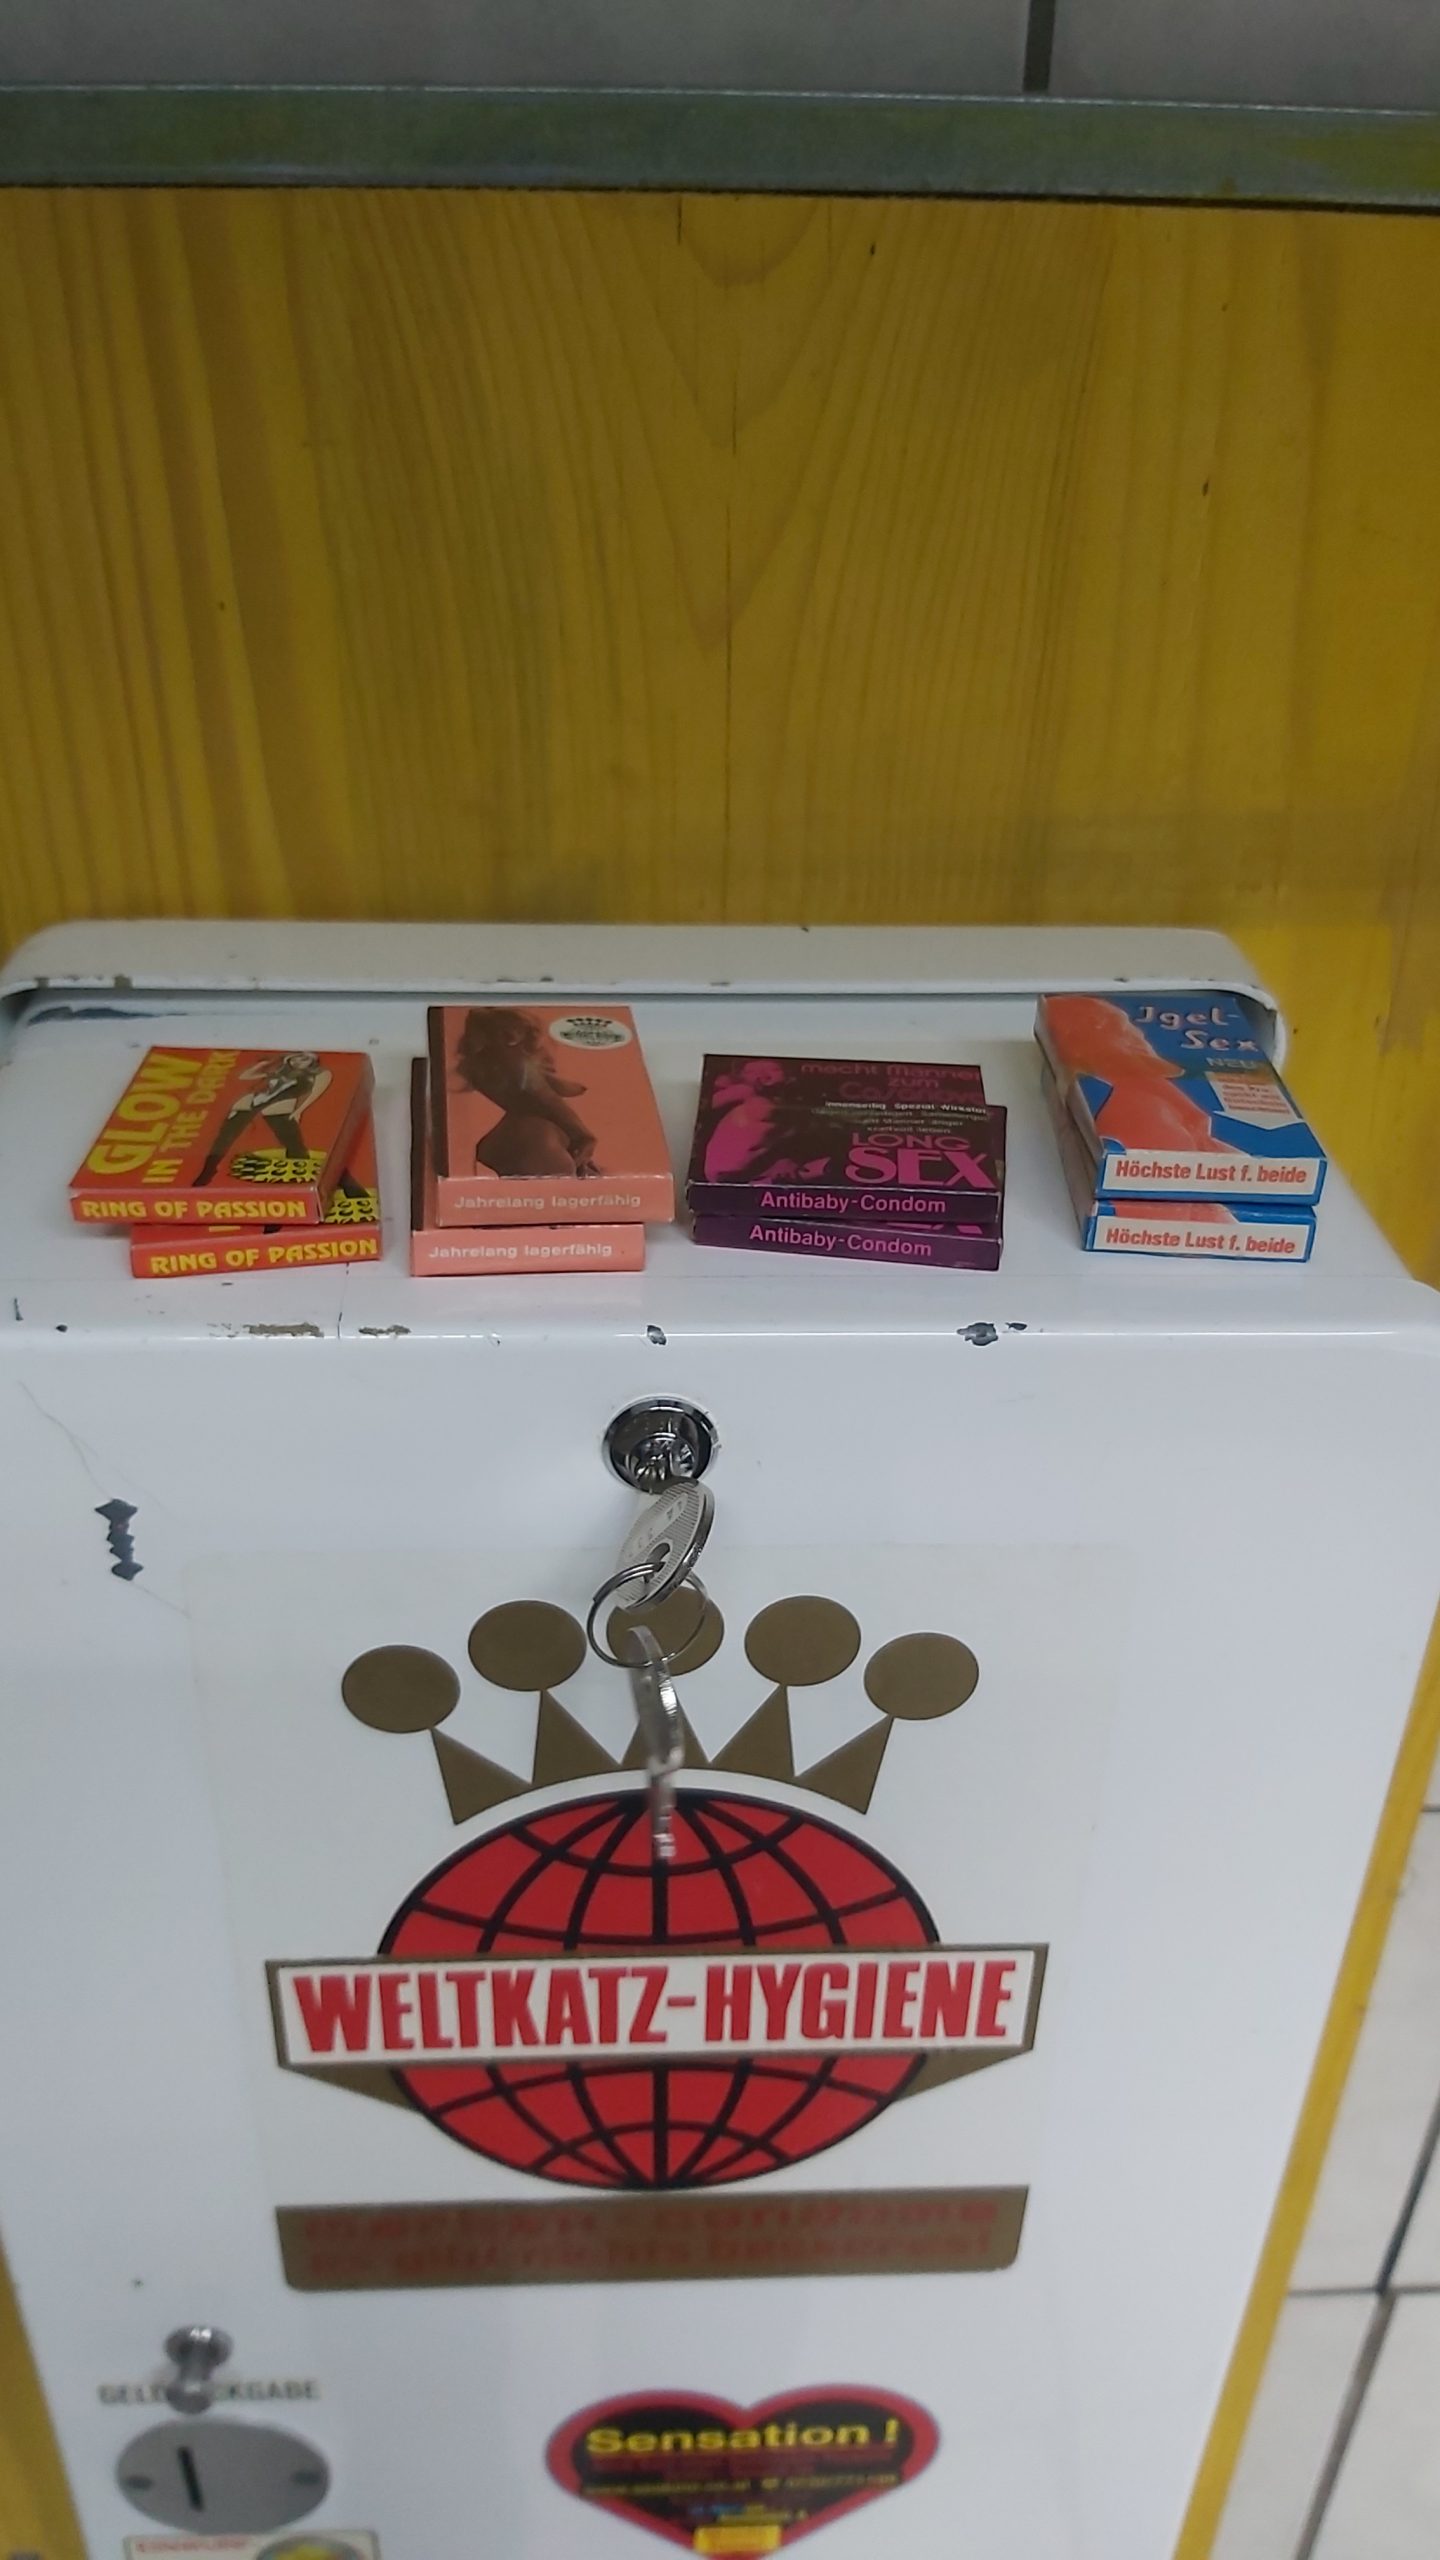 Kondomautomat „Weltkatz Hygiene“ 4 Schacht